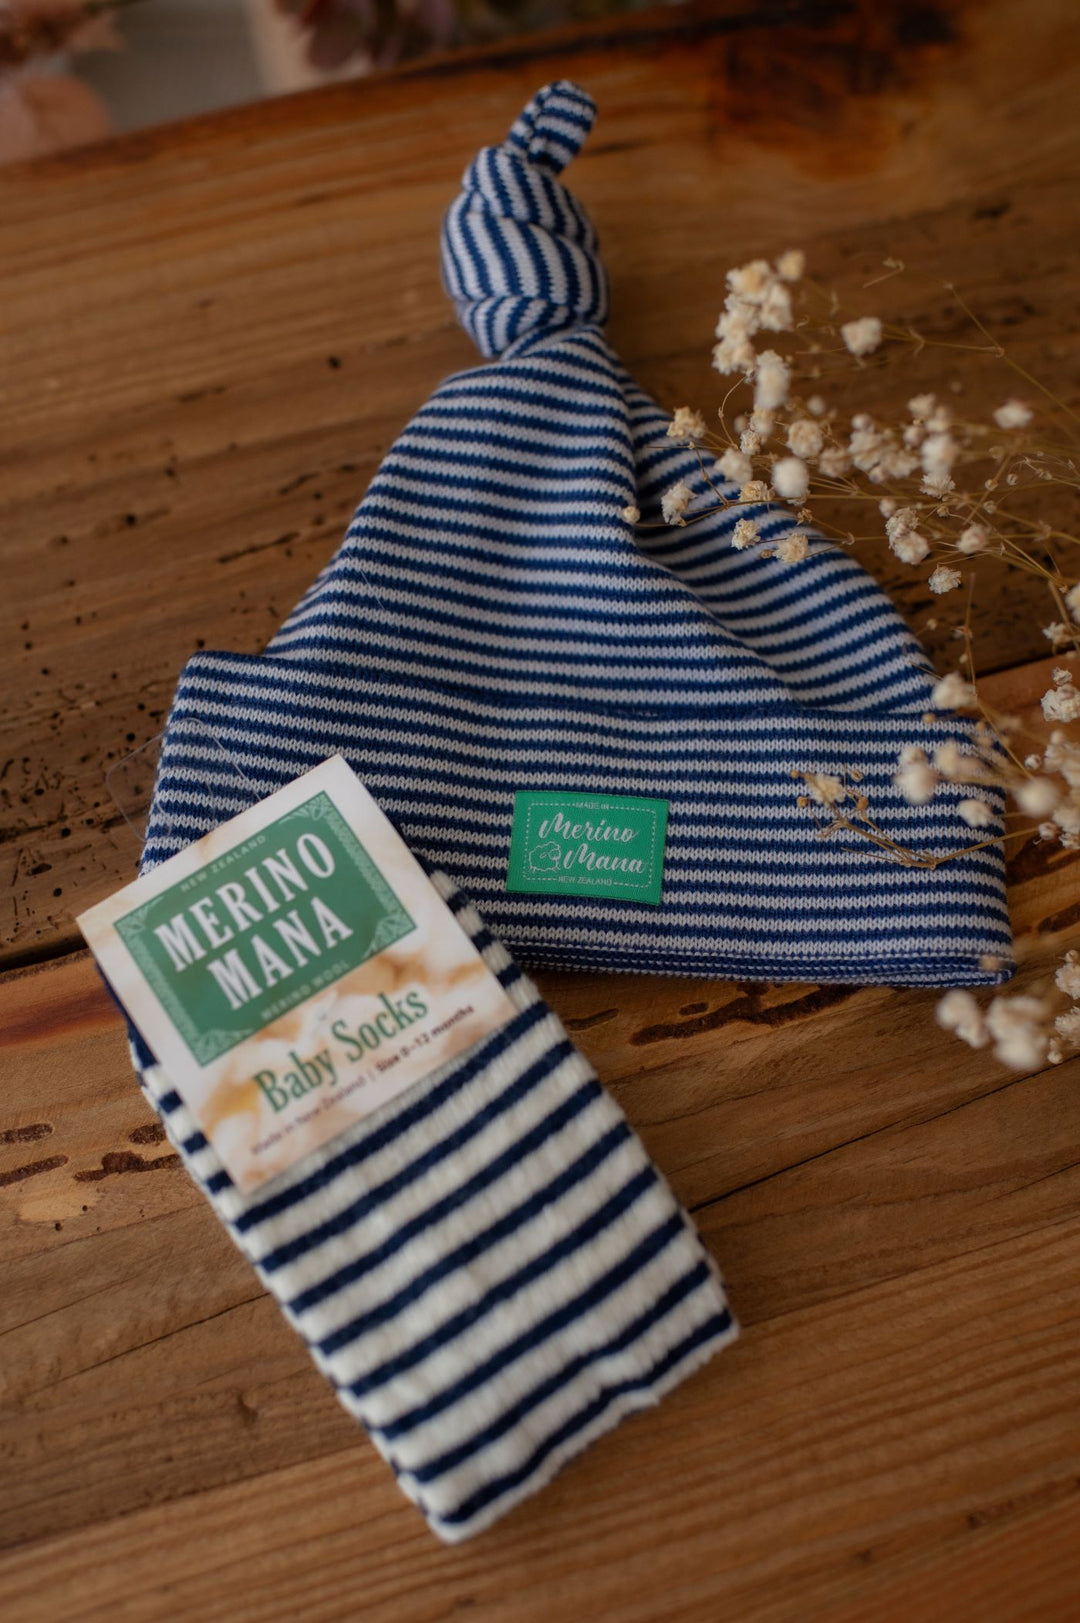 merino wool baby hat and merino wool socks, made in new zealand